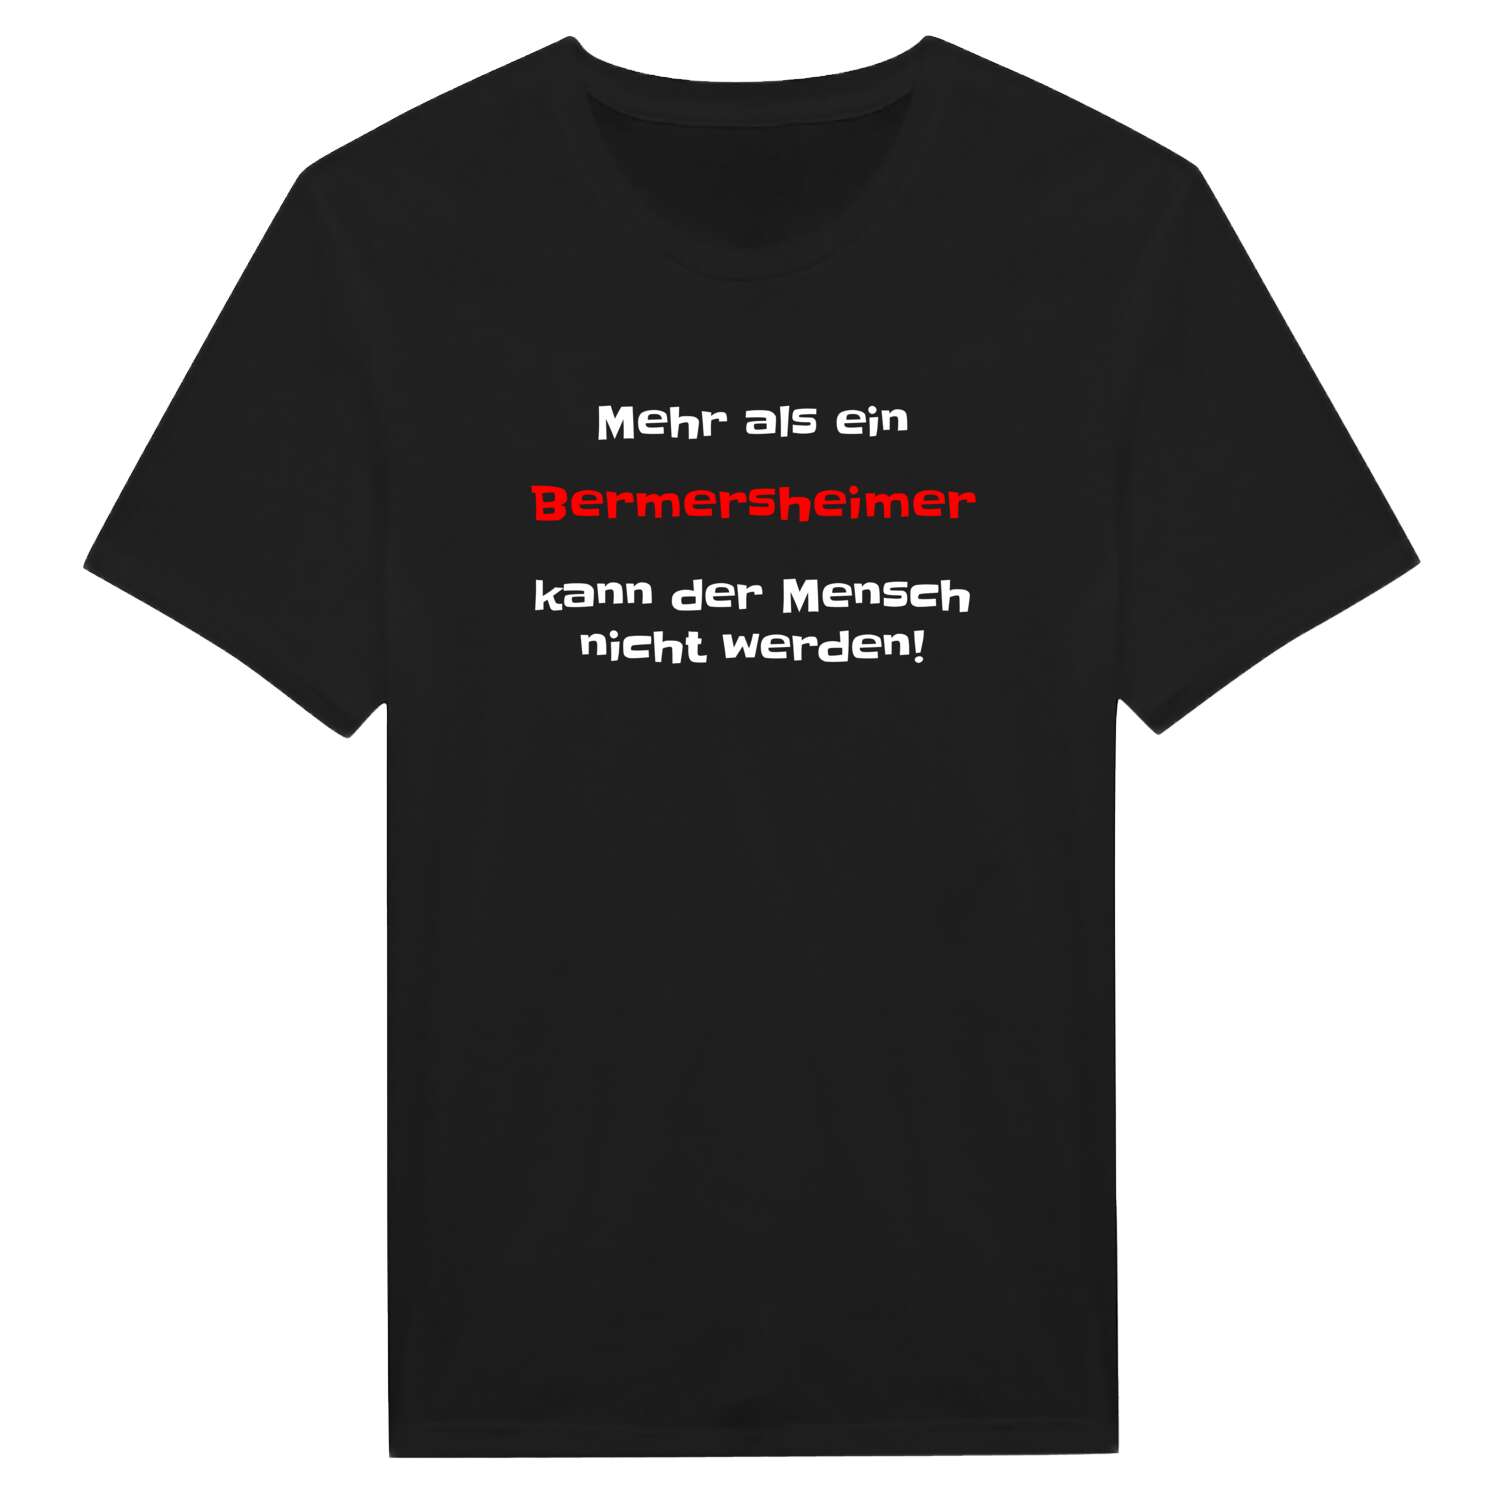 Bermersheim T-Shirt »Mehr als ein«